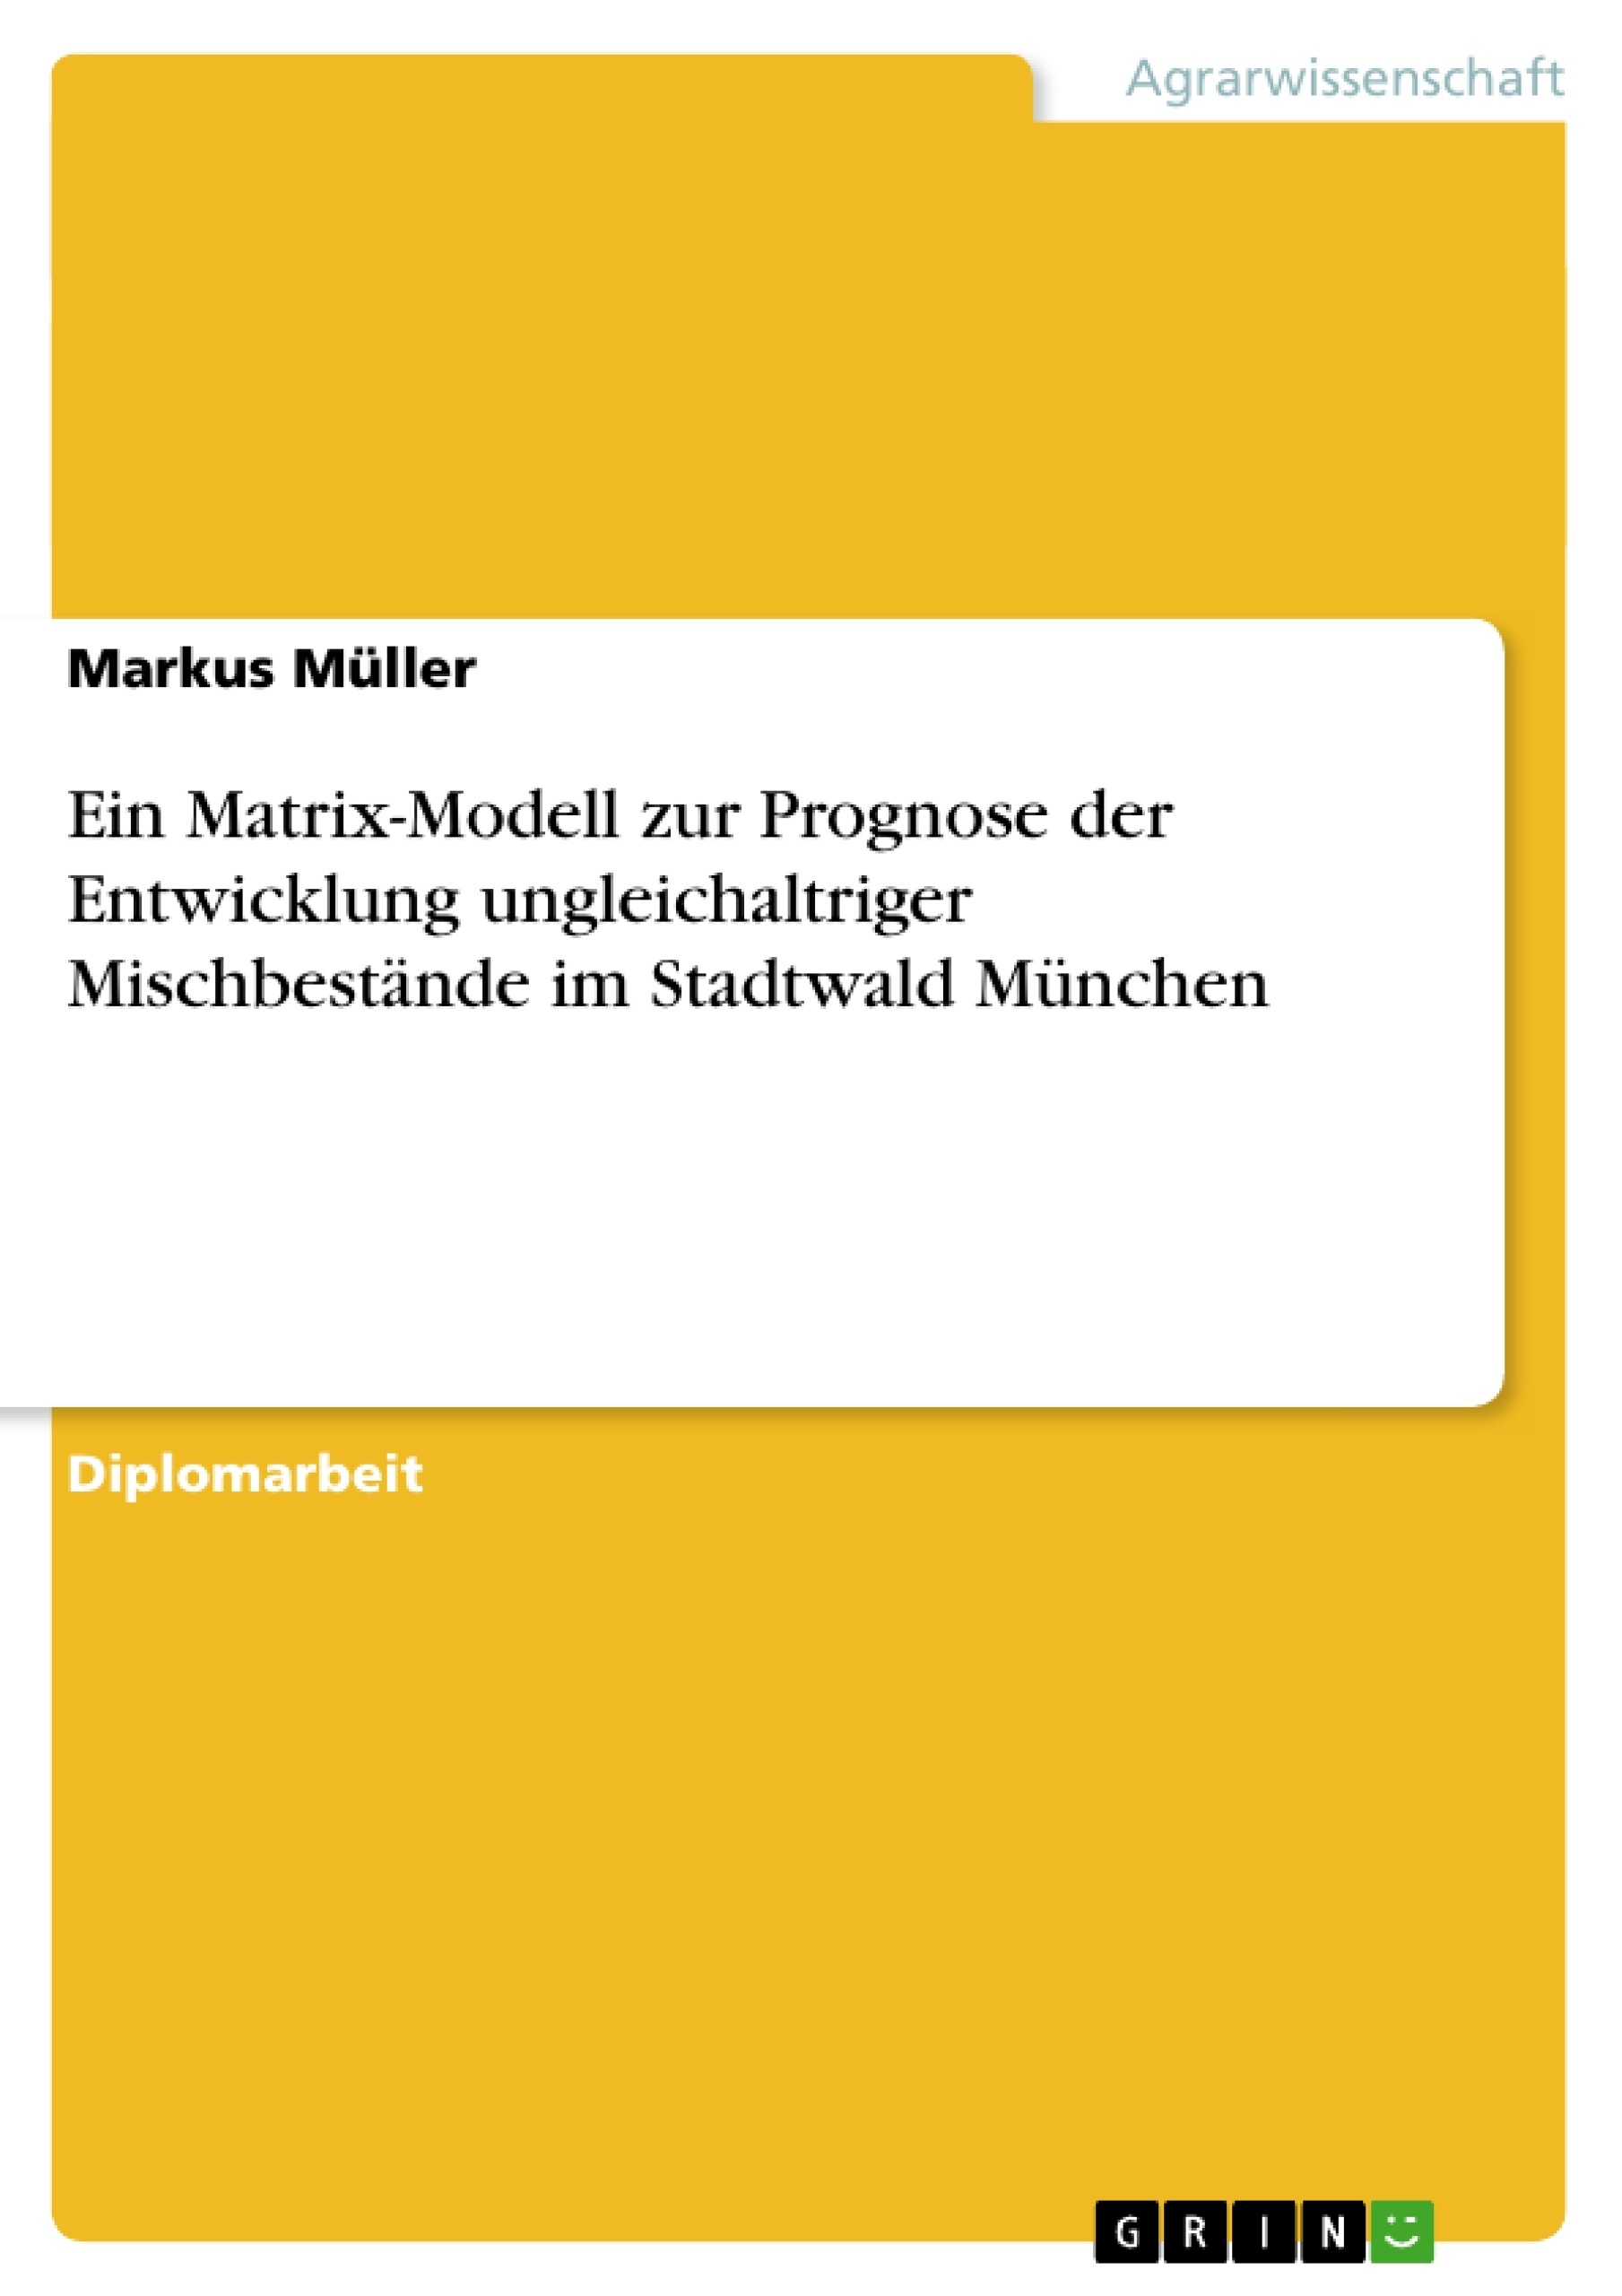 Título: Ein Matrix-Modell zur Prognose der Entwicklung ungleichaltriger Mischbestände im Stadtwald München